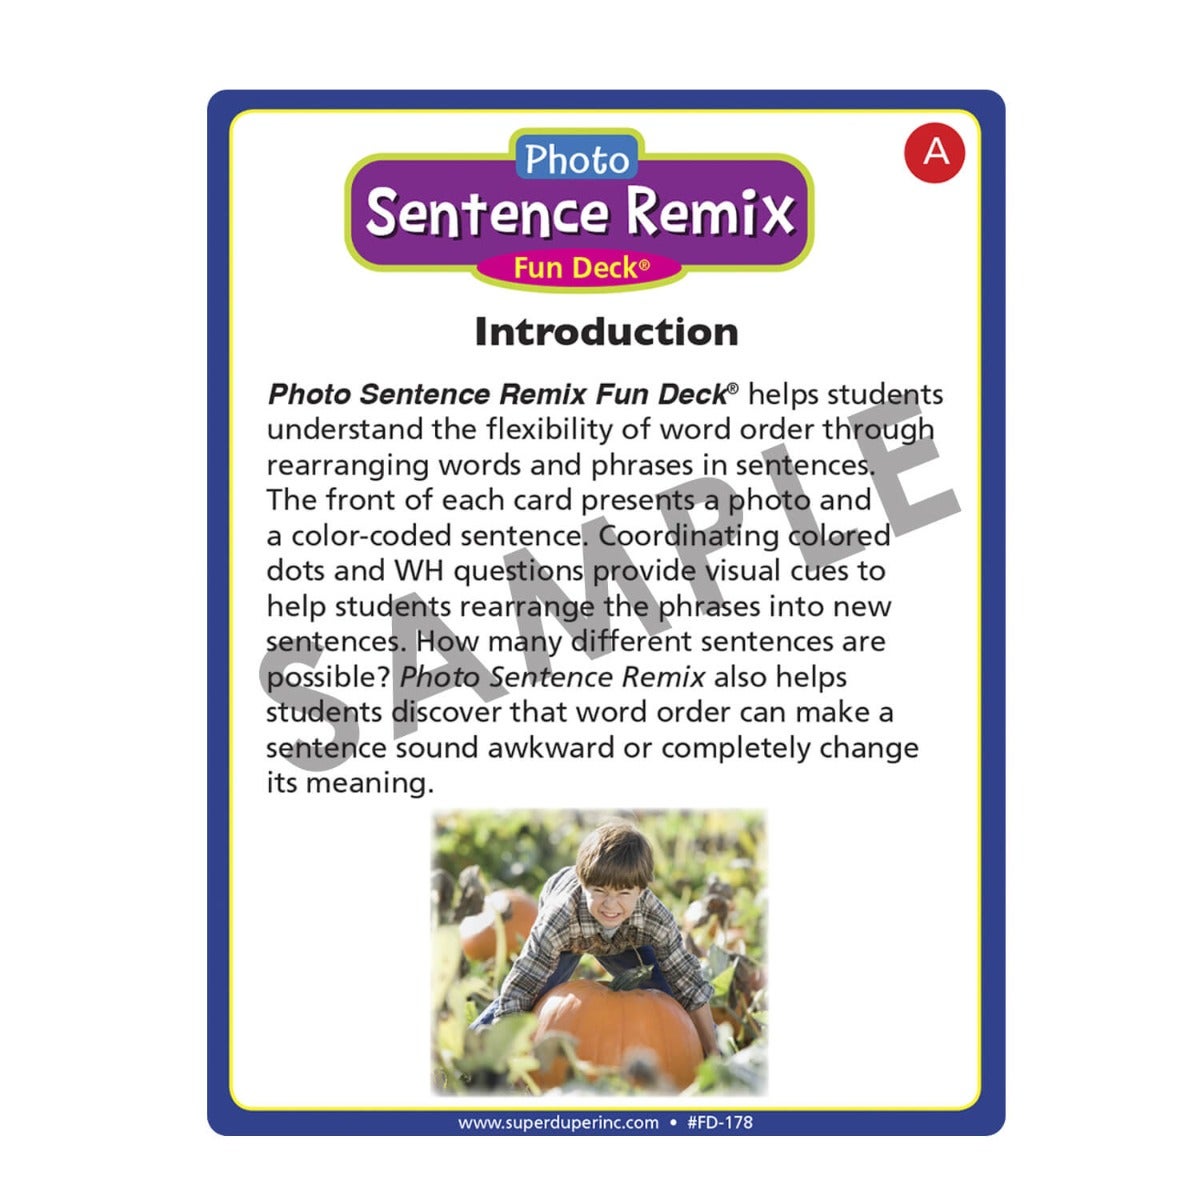 Sentence Remix Fun Deck